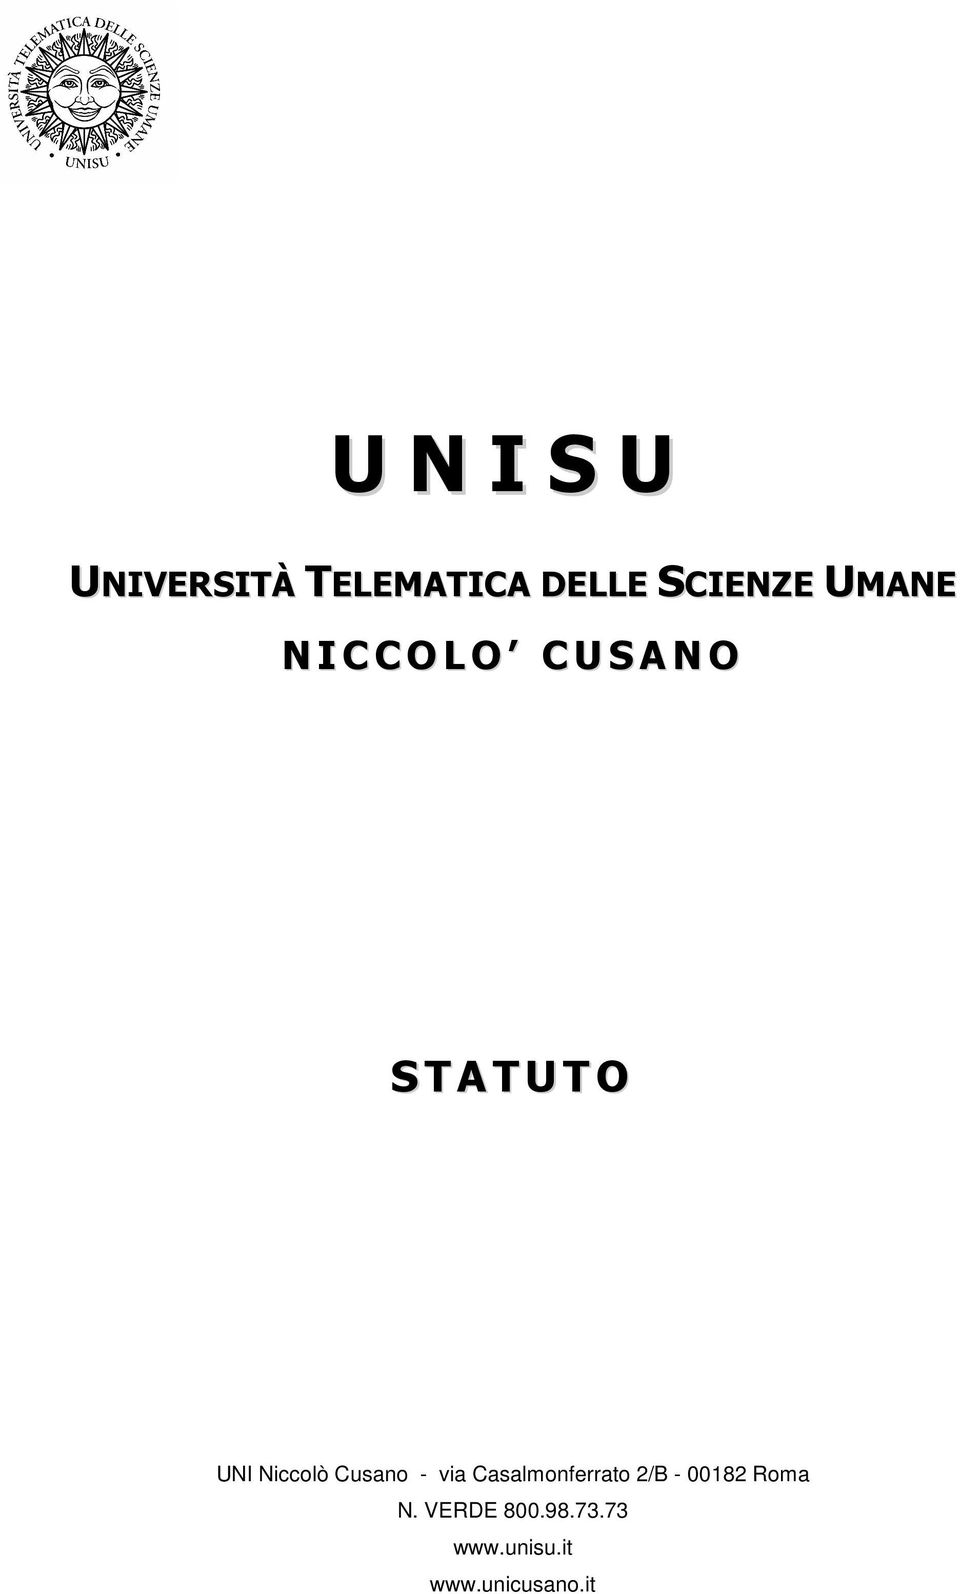 Niccolò Cusano - via Casalmonferrato 2/B - 00182